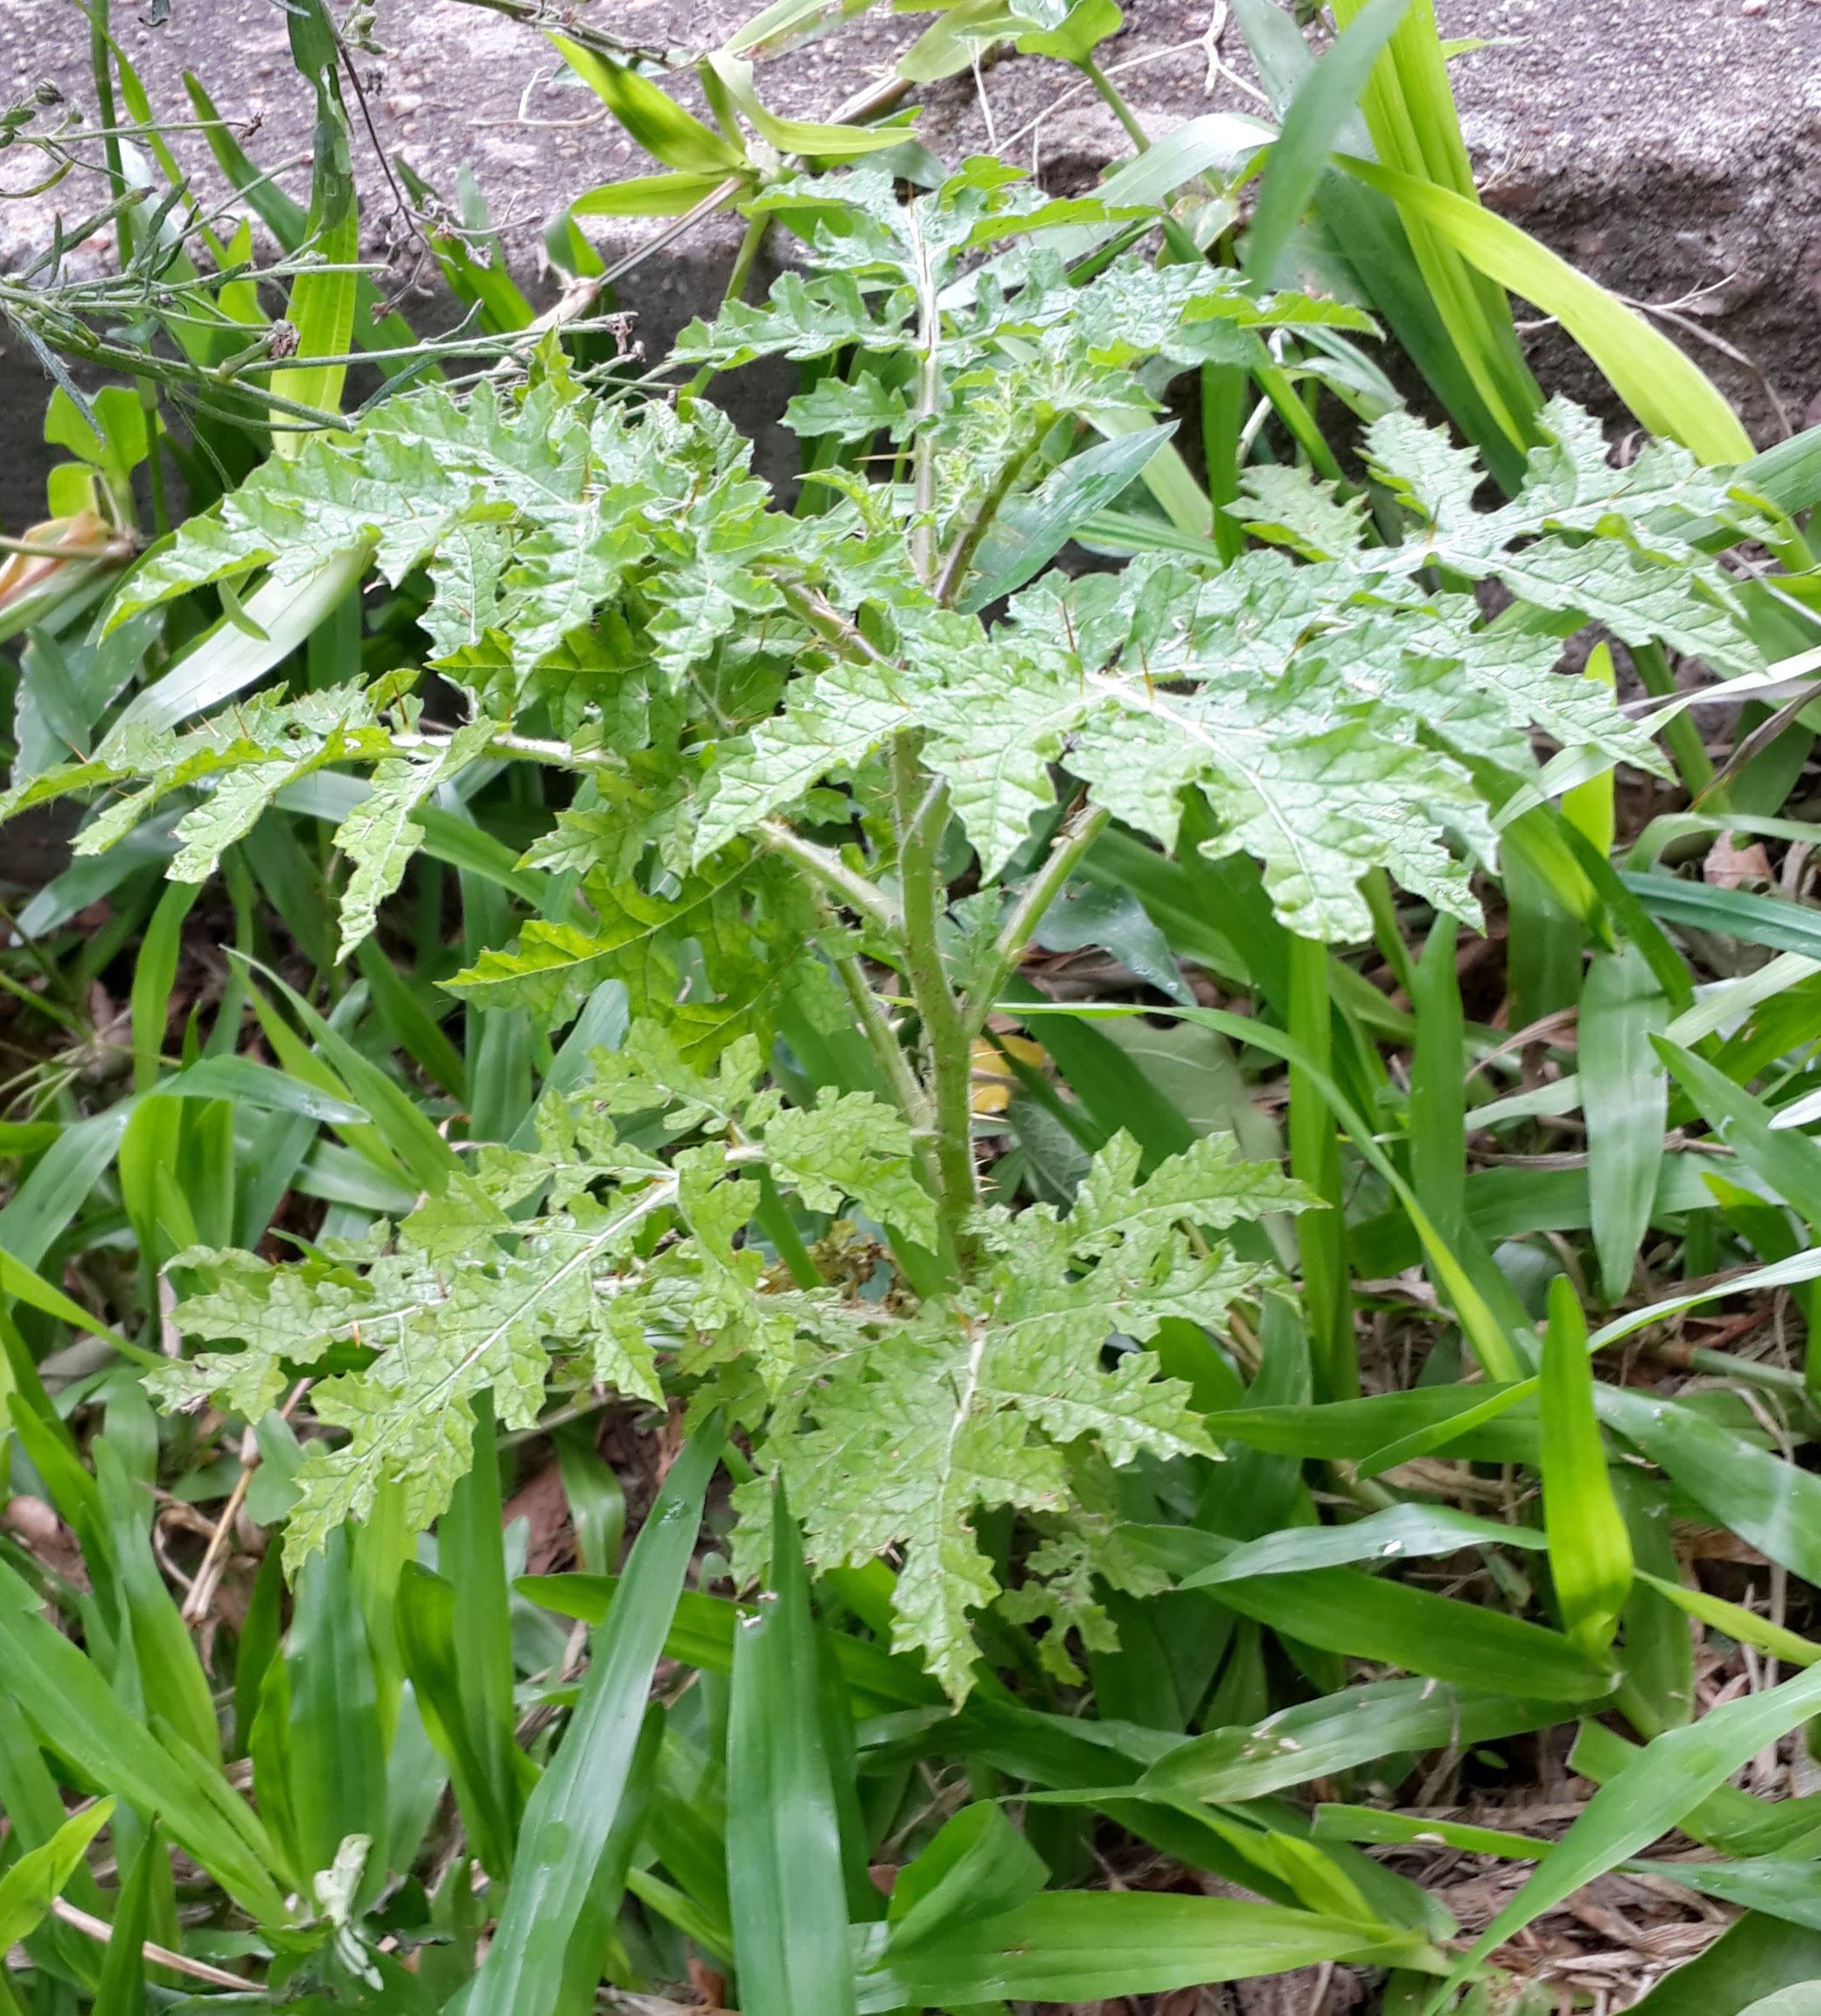 Mata-cavalo (Solanum aculeatissimum Jacq.) - AgriPorticus fotos e